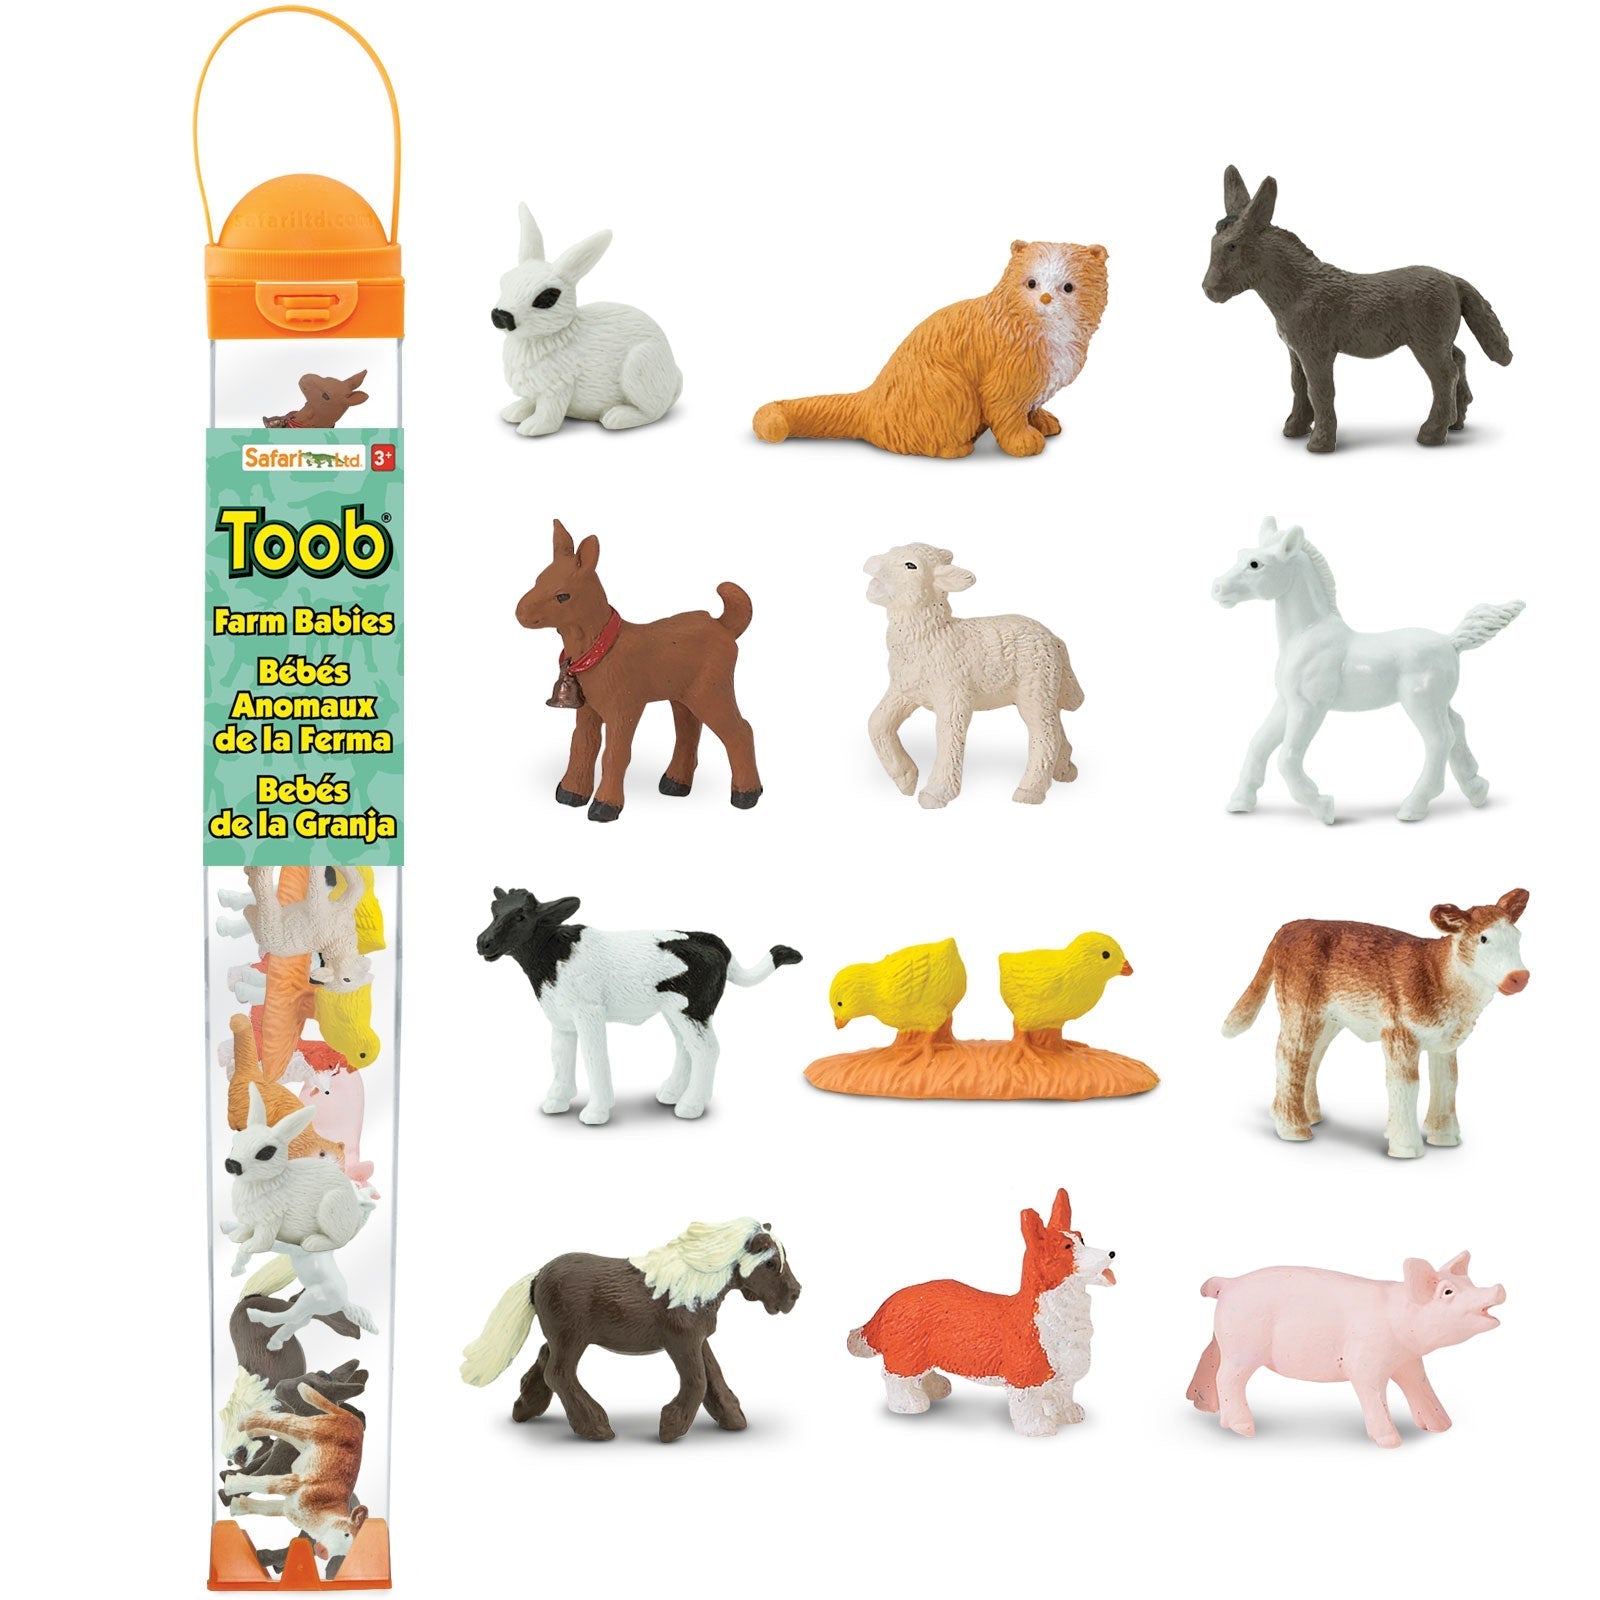 Safari ltd: figurines in tuba small animals farm babies toob 12 pcs.